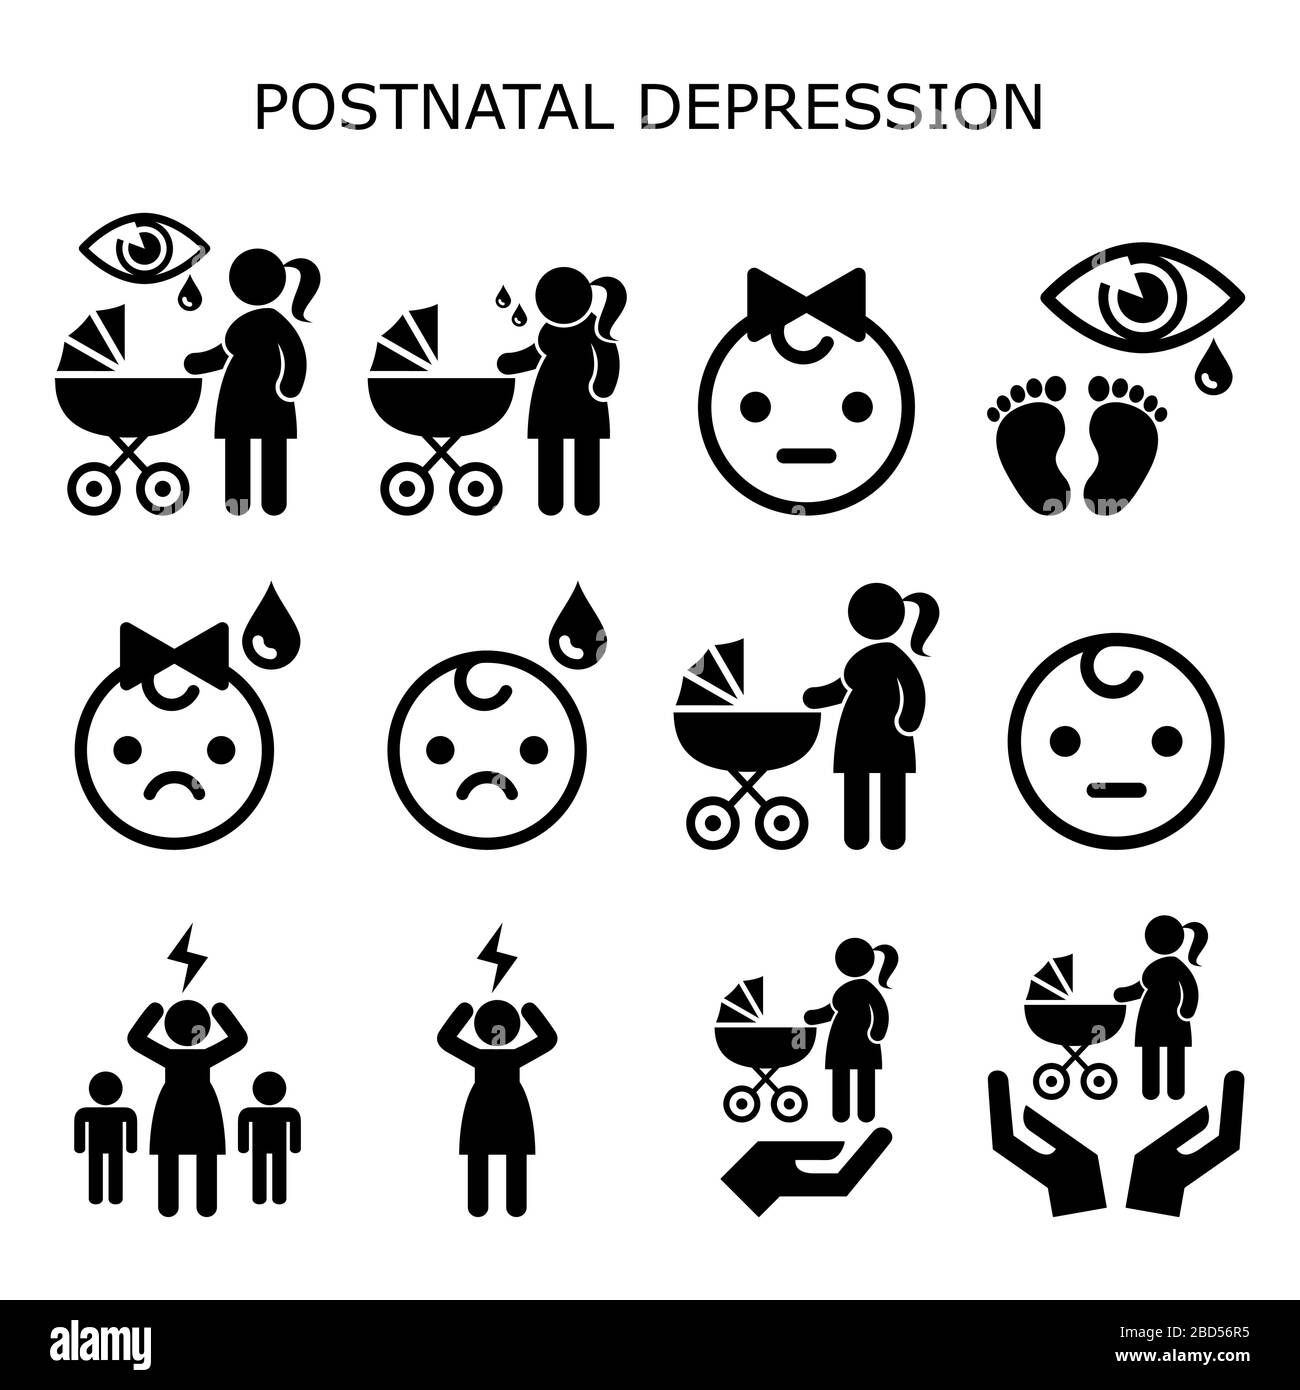 Postnatale Depression, Vektorsymbole für postpartale Depression - neues Konzept für psychische Gesundheit von Müttern, Frauen mit neugeborenem Baby, das einen Blauton erlebt Stock Vektor